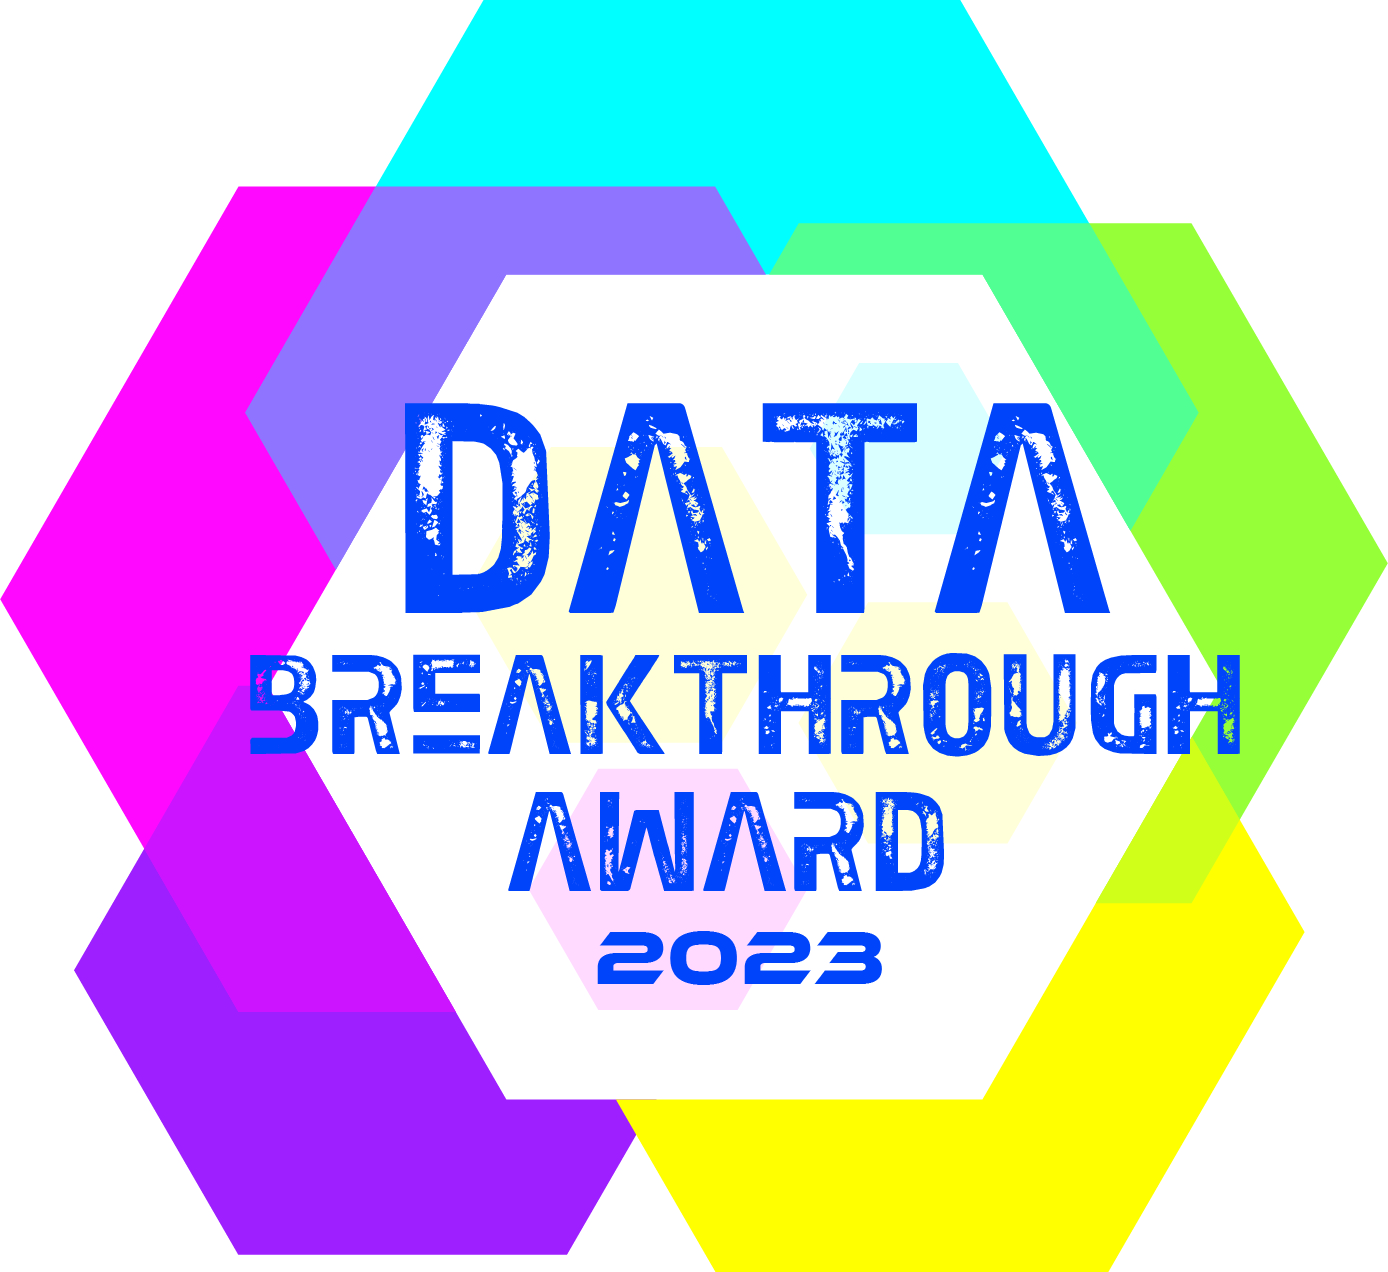 Orion Governance, a Winner of Data Breakthrough Awards 2023